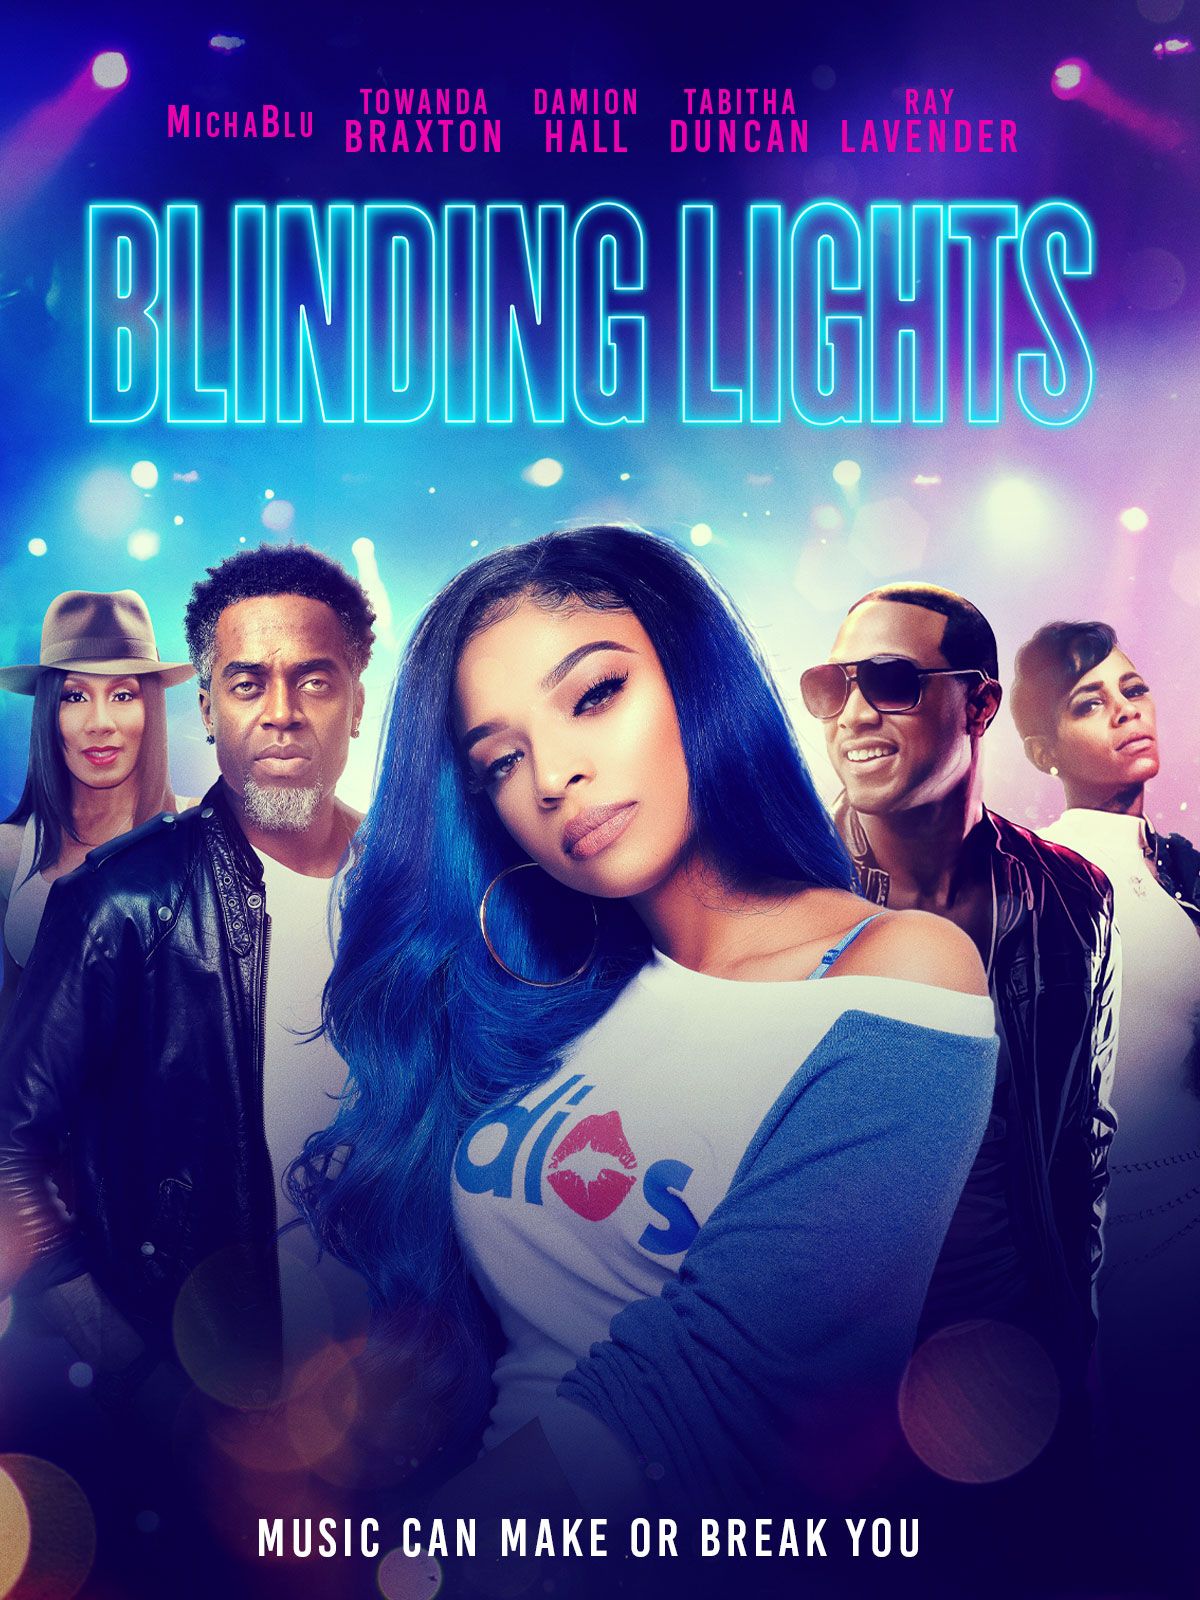 Keyart for the movie Blinding Lights